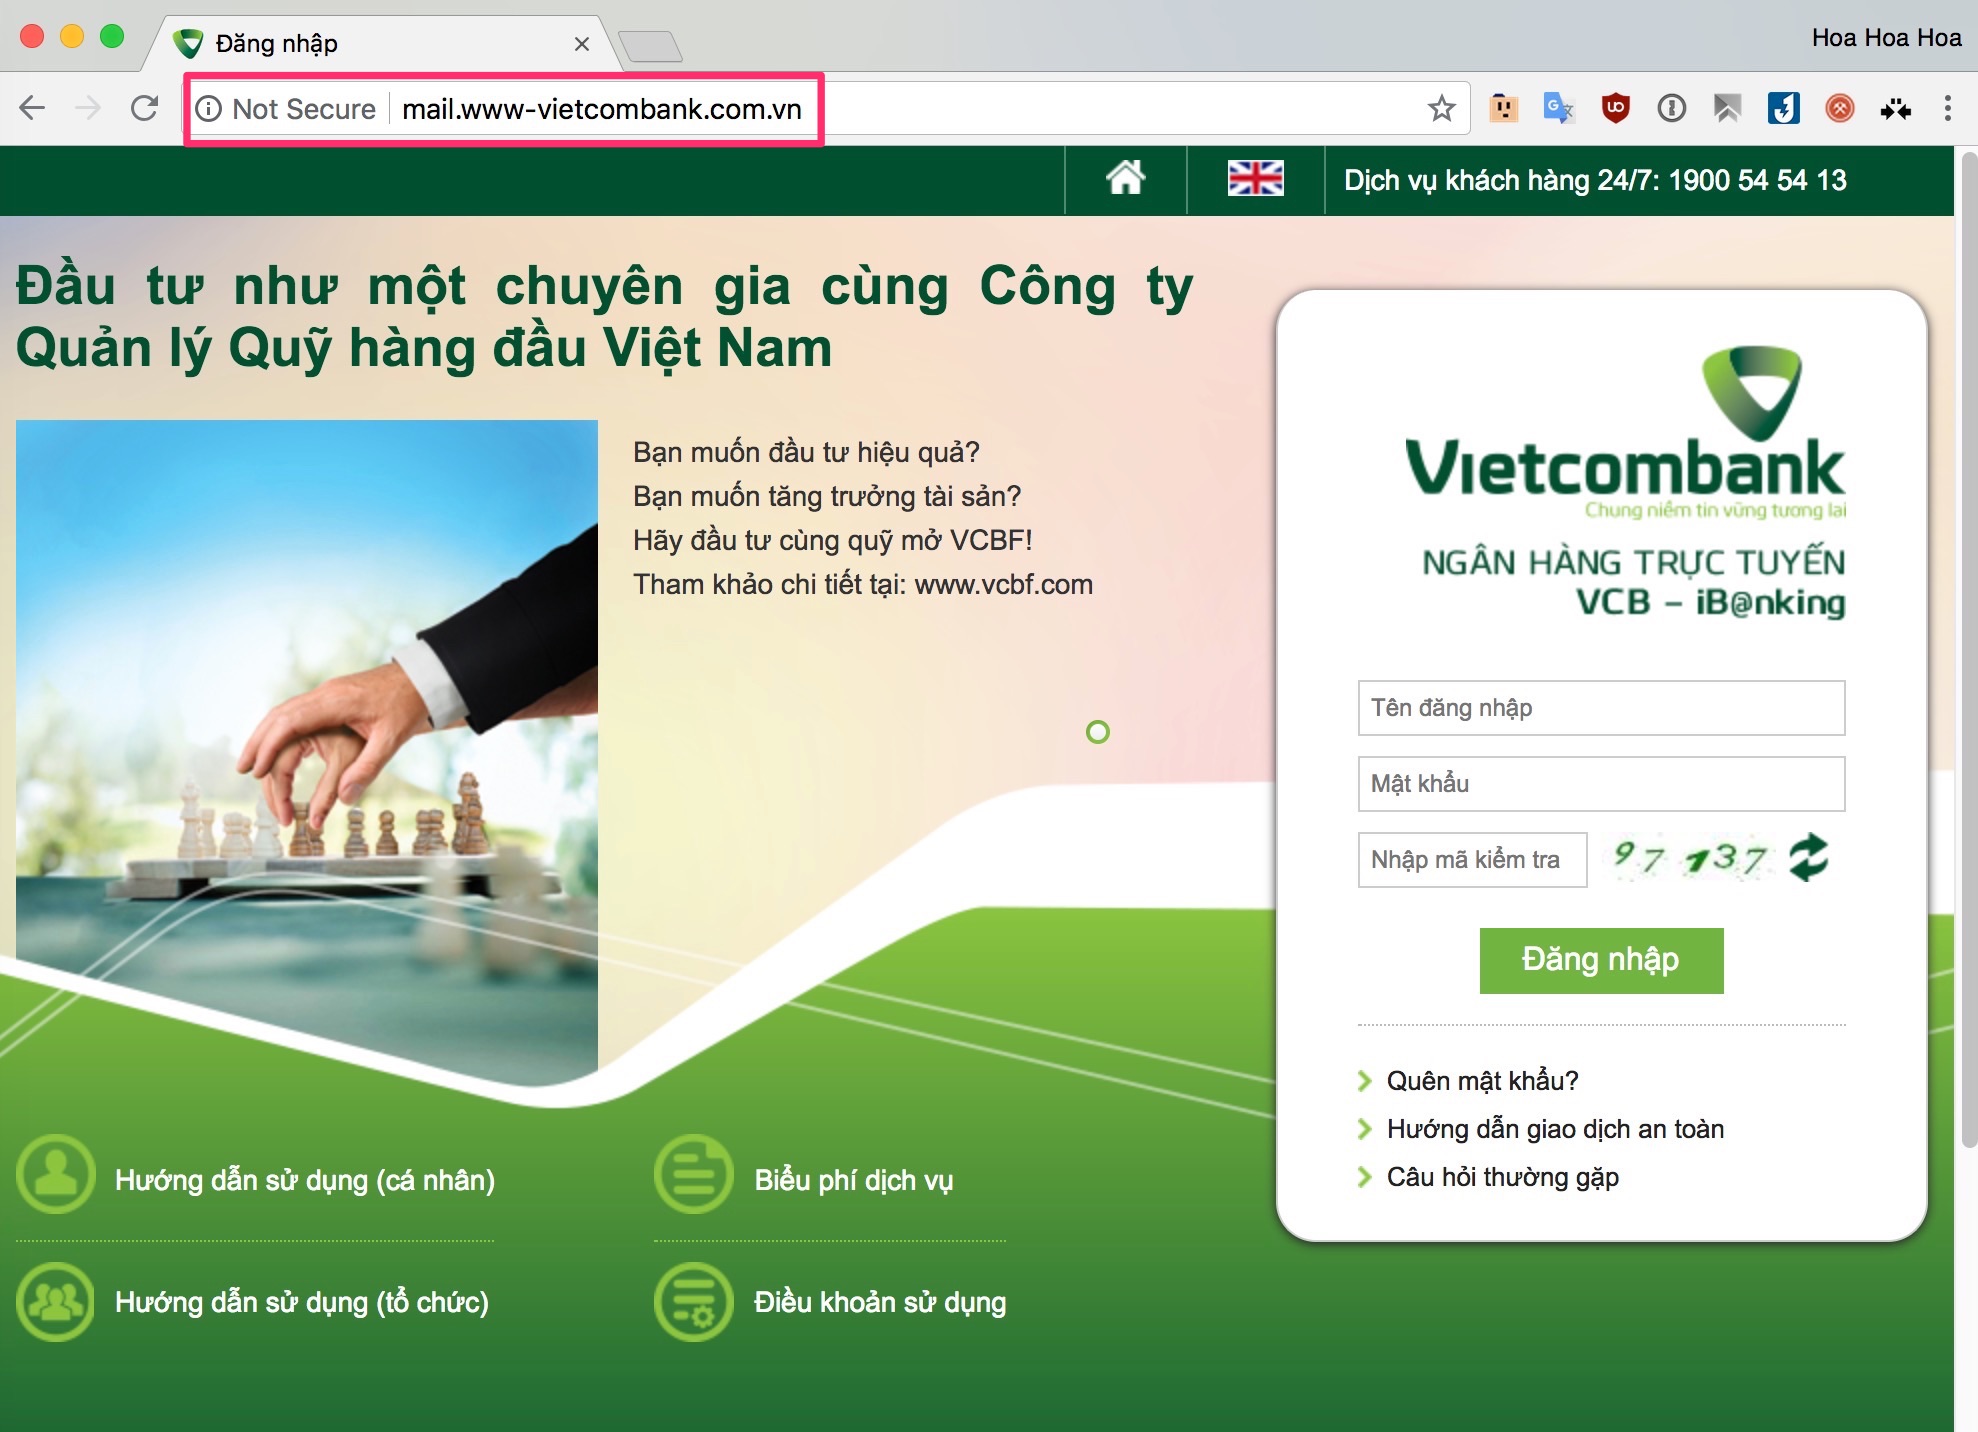 Liên quan đến vụ việc thời gian gần đây xuất hiện tình trạng giả mạo trang website của các ngân hàng lớn để chiếm đoạt tiền khách hàng diễn ra ngày càng tinh vi. Theo đó, chỉ trong một ngày, hai ngân hàng lớn tại Việt Nam là Vietcombank và BIDV đều lên tiếng khuyến cáo người dân trước nạn giả mạo giao diện website giao dịch của các nhà băng này để nhằm chiếm đoạt thông tin cũng như tài sản của người dân.  Trao đổi với Chất lượng Việt Nam online (VietQ.vn), Ths - Luật sư Đặng Văn Cường (Văn phòng luật sư Chính Pháp Hà Nội) cho biết, hiện nay, nhiều ngân hàng đang cảnh báo khách hàng cần thận trọng khi giao dịch trên mạng internet bởi xuất hiện nhiều website giả mạo ngân hàng. Khi khách hàng đăng nhập, sử dụng các website giả mạo này thì tin tặc có thể dễ dàng chiếm được toàn bộ các thông tin cá nhân của chủ thẻ như số tài khoản, mã PIN... hay thậm chí, cả số CVV/CVC ở mặt sau của thẻ tín dụng để từ đó chiếm đoạt tiền trên tài khoản ngân hàng của khách hàng.  Những website này được tin tặc thiết kế giao diện giống hệt với website thật hoặc có tên miền tương tự với website chính thức (có thể chỉ cần khác một ký tự) khiến người dùng nhầm tưởng và vô tư nhập các thông tin cá nhân vào đó và tin tặc sẽ dề dàng kiểm soát tất cả dữ liệu của người dùng. Việc giả mạo website ngân hàng đã làm ảnh hưởng đến hình ảnh của ngân hàng bị giả mạo và đặc biệt trong nhiều trường hợp làm ảnh hưởng trực tiếp đến quyền lợi, tài sản của khách hàng ngân hàng đó.    Pháp luật chưa quy định cụ thể thế nào là hành vi giả mạo trang thông tin điện tử (website). Tuy nhiên trên thực tế, hành vi giả mạo website thường đi kèm mục đích chiếm đoạt tài sản, thông tin cá nhân... và đã được pháp luật chuyên ngành quy định khá chi tiết, đầy đủ. Dưới góc độ pháp lý, việc giả mạo là thủ đoạn để việc chiếm đoạt được dễ dàng. Việc giả mạo website thường được hiểu là sự sao chép hình thức (giao diện) hoặc nội dung của website chính thức của cơ quan, tổ chức khác mà không trích dẫn, chú thích nguồn tin nhằm làm cho người truy cập lầm tưởng đó là trang web “thật” để trục lợi.  Tùy theo tính chất và mức độ vi phạm, hành vi vi phạm có thể bị xử lý theo các quy định sau:  - Trường hợp giả mạo website nhằm mục đích đánh cắp quyền truy cập tài khoản, đánh cắp dữ liệu, thông tin cá nhân để chiếm đoạt tài sản thì có thể bị xem xét, xử lý về hành vi trộm cắp tài sản theo Điều 173 Bộ luật hình sự hiện hành.  - Trường hợp giả mạo website nhằm mục đích lừa đảo chiếm đoạt tài sản (người truy cập máy tính lầm tưởng là website thật mà tự nguyện chuyển tiền, giao tài sản) thì người vi phạm có thể bị xử phạt hành chính hoặc truy cứu trách nhiệm hình sự về tội Lừa đảo chiếm đoạt tài sản theo Điều 174 Bộ luật hình sự hiện hành.  - Ngoài ra, người vi phạm cũng có thể bị xử lý về Tội sử dụng mạng máy tính, mạng viễn thông, phương tiện điện tử thực hiện hành vi chiếm đoạt tài sản (Điều 290); Tội thu thập, tàng trữ, trao đổi, mua bán, công khai hóa trái phép thông tin về tài khoản ngân hàng (Điều 291) quy định trong Bộ luật hiện hành nếu hành vi đủ yếu tố cấu thành tội phạm.   Ngoài chế tài trực tiếp mà người vi phạm phải gánh chịu trước pháp luật thì người vi phạm còn phải bồi thường toàn bộ thiệt hại cho người bị hại (nếu có) và phải khôi phục lại thiết bị như tình trạng ban đầu.  Việc giả mạo website ngày càng chuyên nghiệp và gia tăng, Ngân hàng cần tăng cường việc khuyến cáo, có thông tin cảnh báo gửi tới khách hàng trên trang Website, thông tin rộng rãi trên báo chí và gửi email tới khách hàng để nâng cao thói quen sử dụng đảm bảo các giao dịch và thao tác an toàn cho người sử dụng dịch vụ.   Ngoài ra chính bản thân khách hàng nên thận trọng và lưu ý khi tham gia giao dịch trên internet để bảo vệ tài khoản của mình. Khi tham gia giao dịch, khách hàng nên tìm hiểu kỹ về website chính thức của ngân hàng và chỉ thực hiện giao dịch tài khoản trên website chính thức của ngân hàng. Cân nhắc đến việc sử dụng các phần mềm diệt virus và thường xuyên cập nhật phiên bản mới nhất; không cài đặt các phần mềm độc hại, không rõ nguồn gốc xuất xứ trên máy tính cá nhân và điện thoại di động của mình. Khi nhận được tin nhắn hoặc thông báo qua SMS, email hay từ trang web của Ngân hàng, khách hàng nên kiểm tra lại thông tin, tránh trường hợp tin tặc lợi dụng lòng tin, mạo danh ngân hàng để cướp đoạt tài sản. Để tránh bị kẻ xấu lợi dụng, khách hàng không nên cung cấp thông tin cá nhân như: tên, địa chỉ, ngày sinh, số CMND, số thẻ, số tài khoản, tên truy cập dịch vụ ngân hàng điện tử qua Internet, Mobile… cho người lạ và không đứng tên mở hộ tài khoản tại Ngân hàng, làm hộ thẻ ngân hàng và các dịch vụ ngân hàng điện tử để cho người khác sử dụng.   Việc khách hàng không cẩn trọng, chủ động đăng nhập thông tin tài khoản vào những trang website mạo danh ngân hàng và để bị mất tên truy cập, mật khẩu là lỗi một phần thuộc về khách hàng. Tuy nhiên, có điểm lưu ý quan trọng là việc xác thực mã OTP (One time password – mật khẩu xác thực một lần), trong trường hợp hệ thống ngân hàng có sai sót dẫn đến thông tin bị kẻ gian lấy cắp và rút được tiền thì trách nhiệm thuộc về Ngân hàng.  Trong trường hợp khách hàng cài Smart OTP, kẻ gian đã lấy được thông tin từ phần mềm trên điện thoại của khách hàng thì không thể quy hoàn toàn trách nhiệm thuộc về ngân hàng. Việc xác định trách nhiệm thuộc về ai trong trường hợp này cần phải đánh giá chi tiết từ phía cơ quan điều tra.